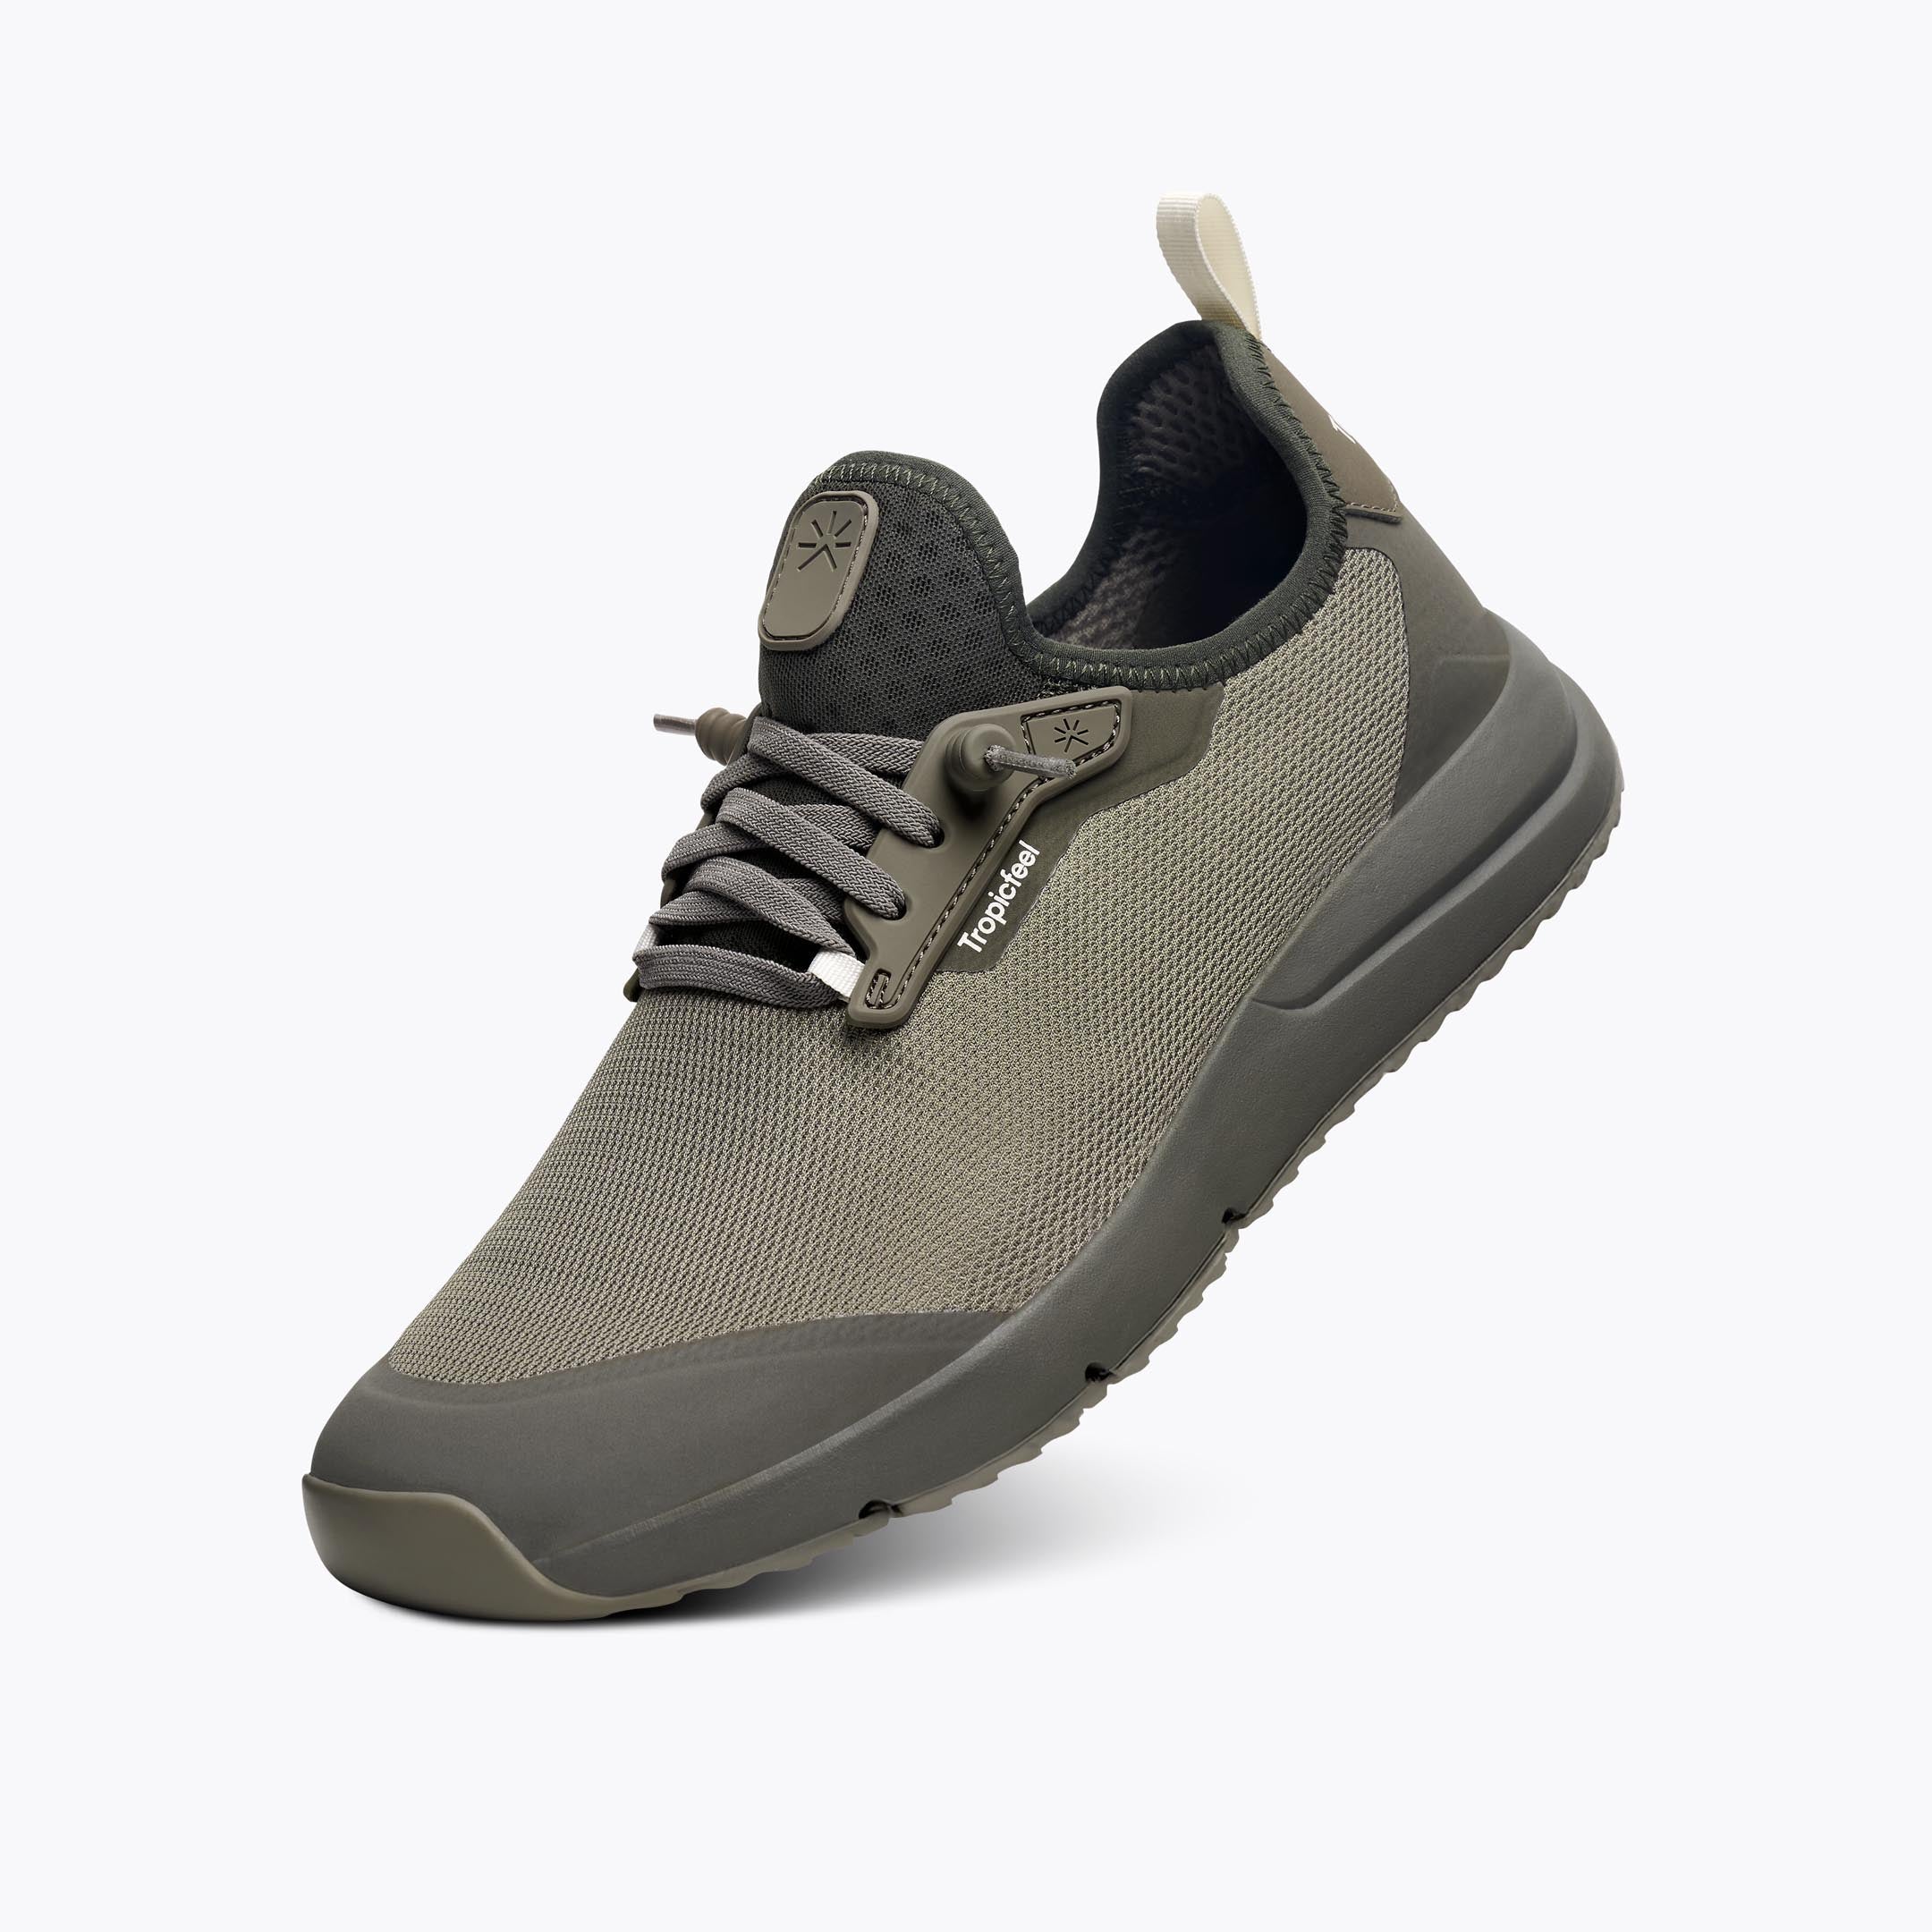 All-Terrain Lite - Lightweight and Packable Sneaker